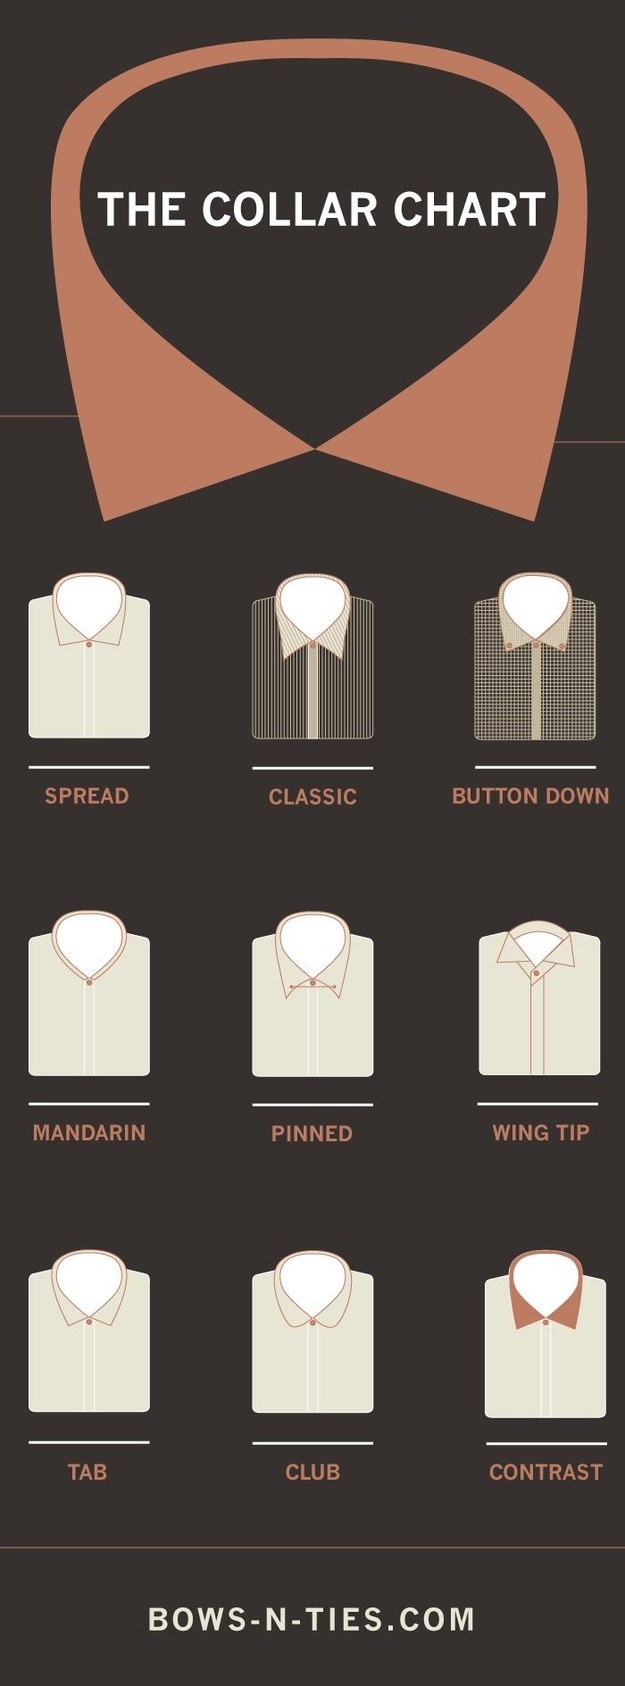 Как называются разновидности воротничков рубашек.